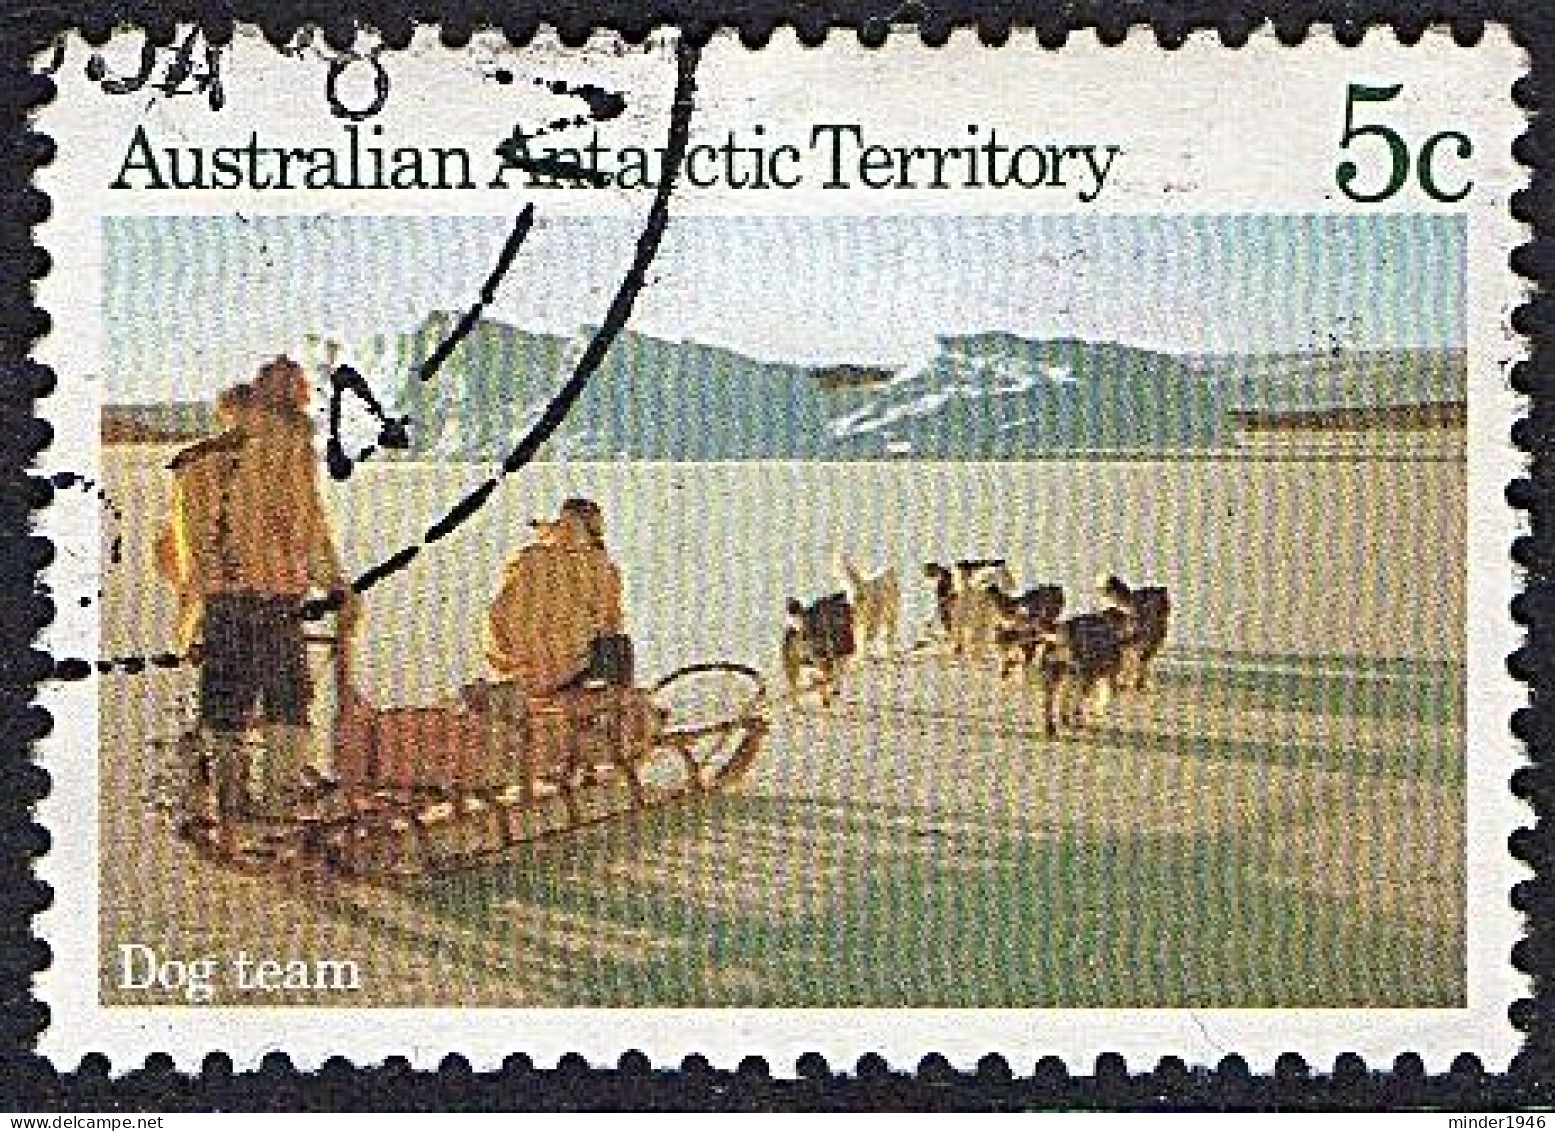 AUSTRALIAN ANTARCTIC TERRITORY (AAT) 1984 QEII 5c Multicoloured, Scenes-Dog Team SG64 FU - Usati